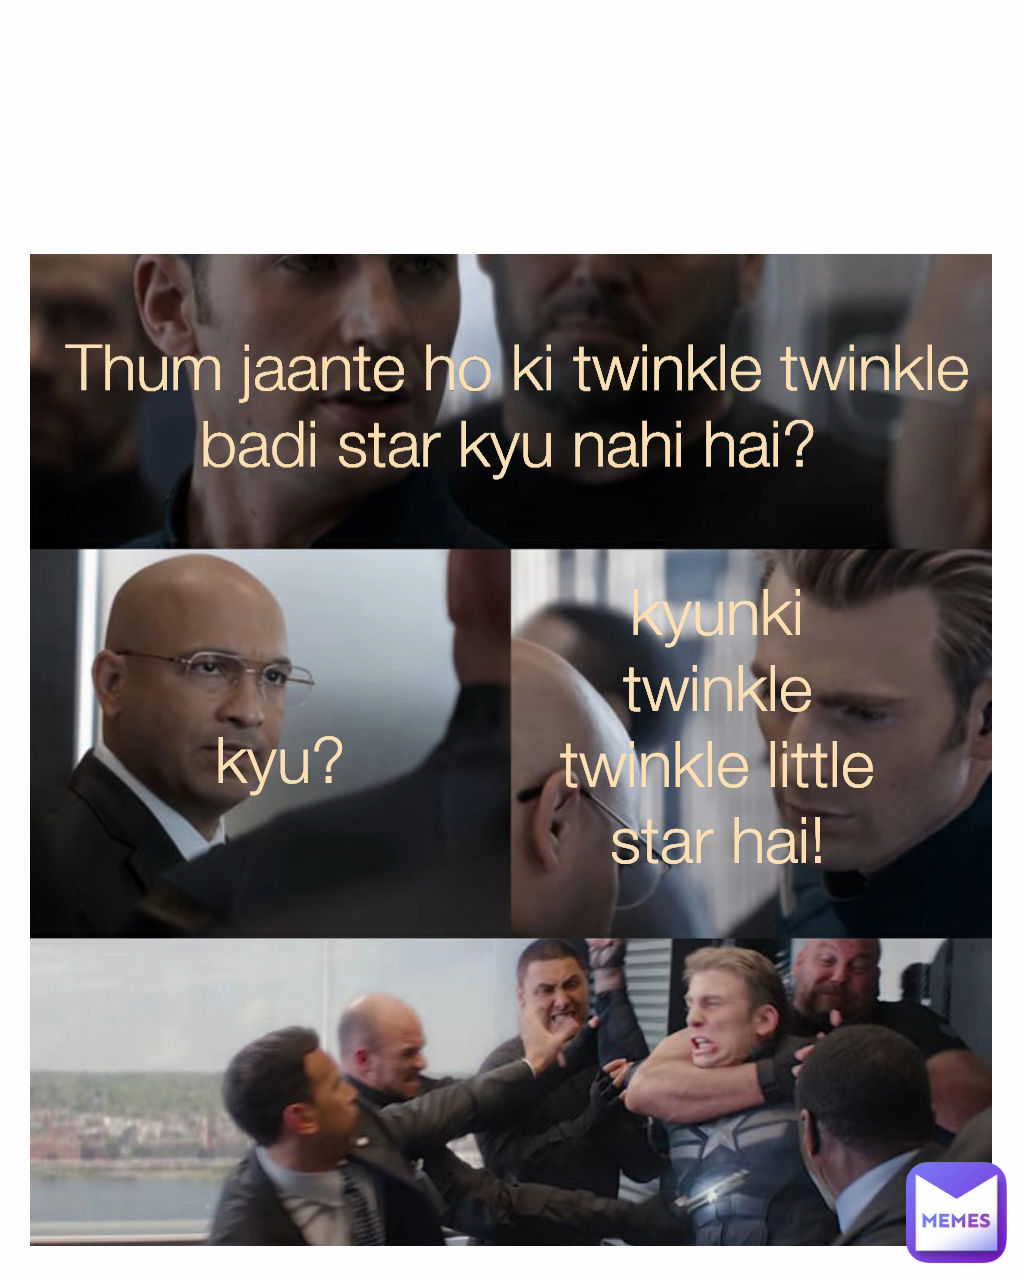 Thum jaante ho ki twinkle twinkle badi star kyu nahi hai?  kyu?  kyunki twinkle twinkle little star hai!